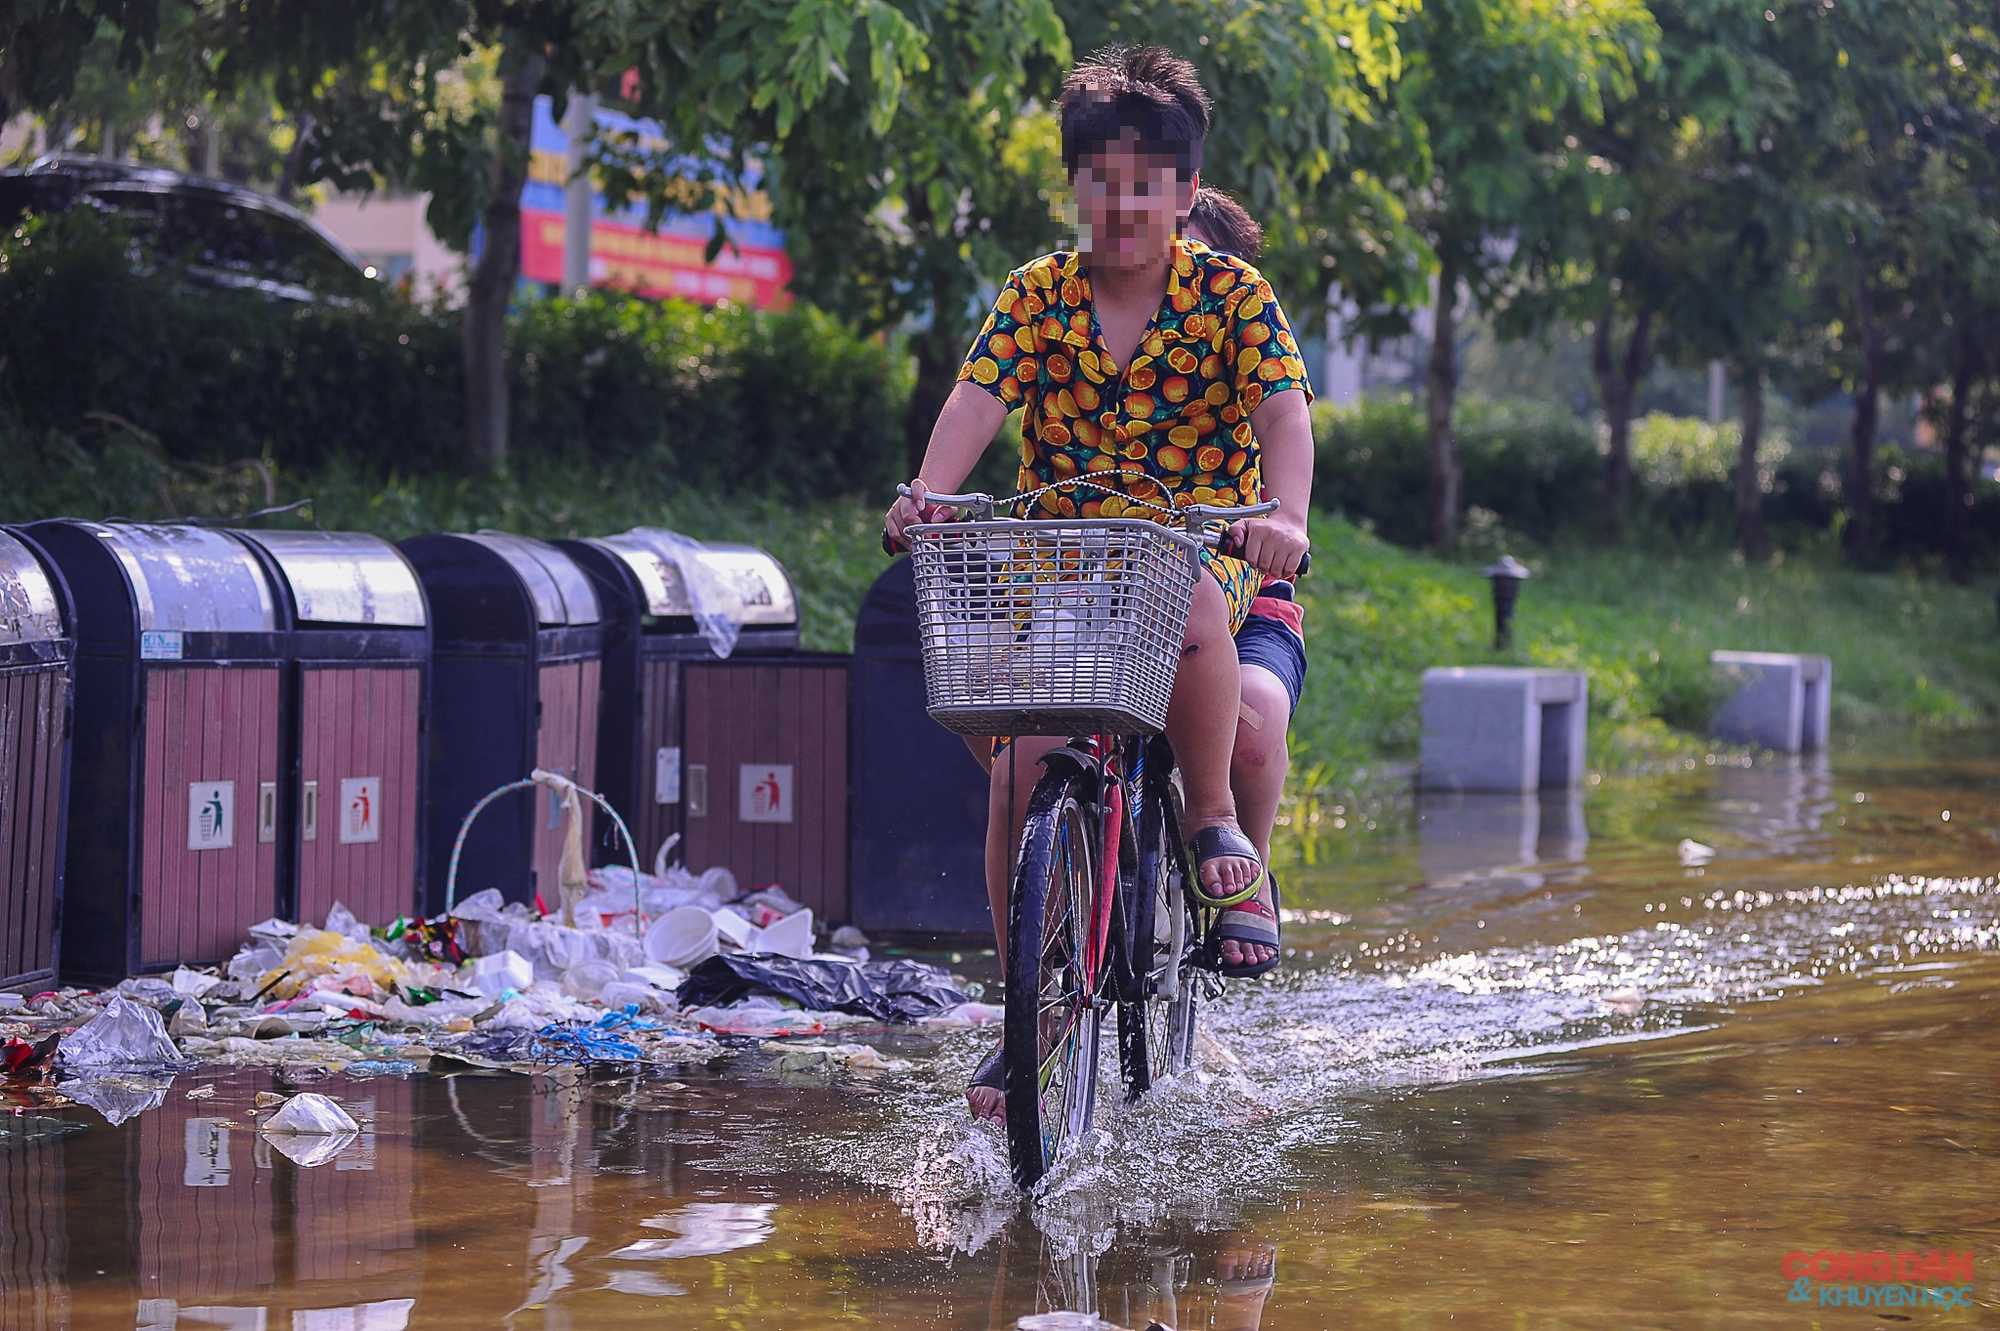 Hà Nội: Công viên 950 tỷ đồng ngập tràn nước và rác thải - Ảnh 9.